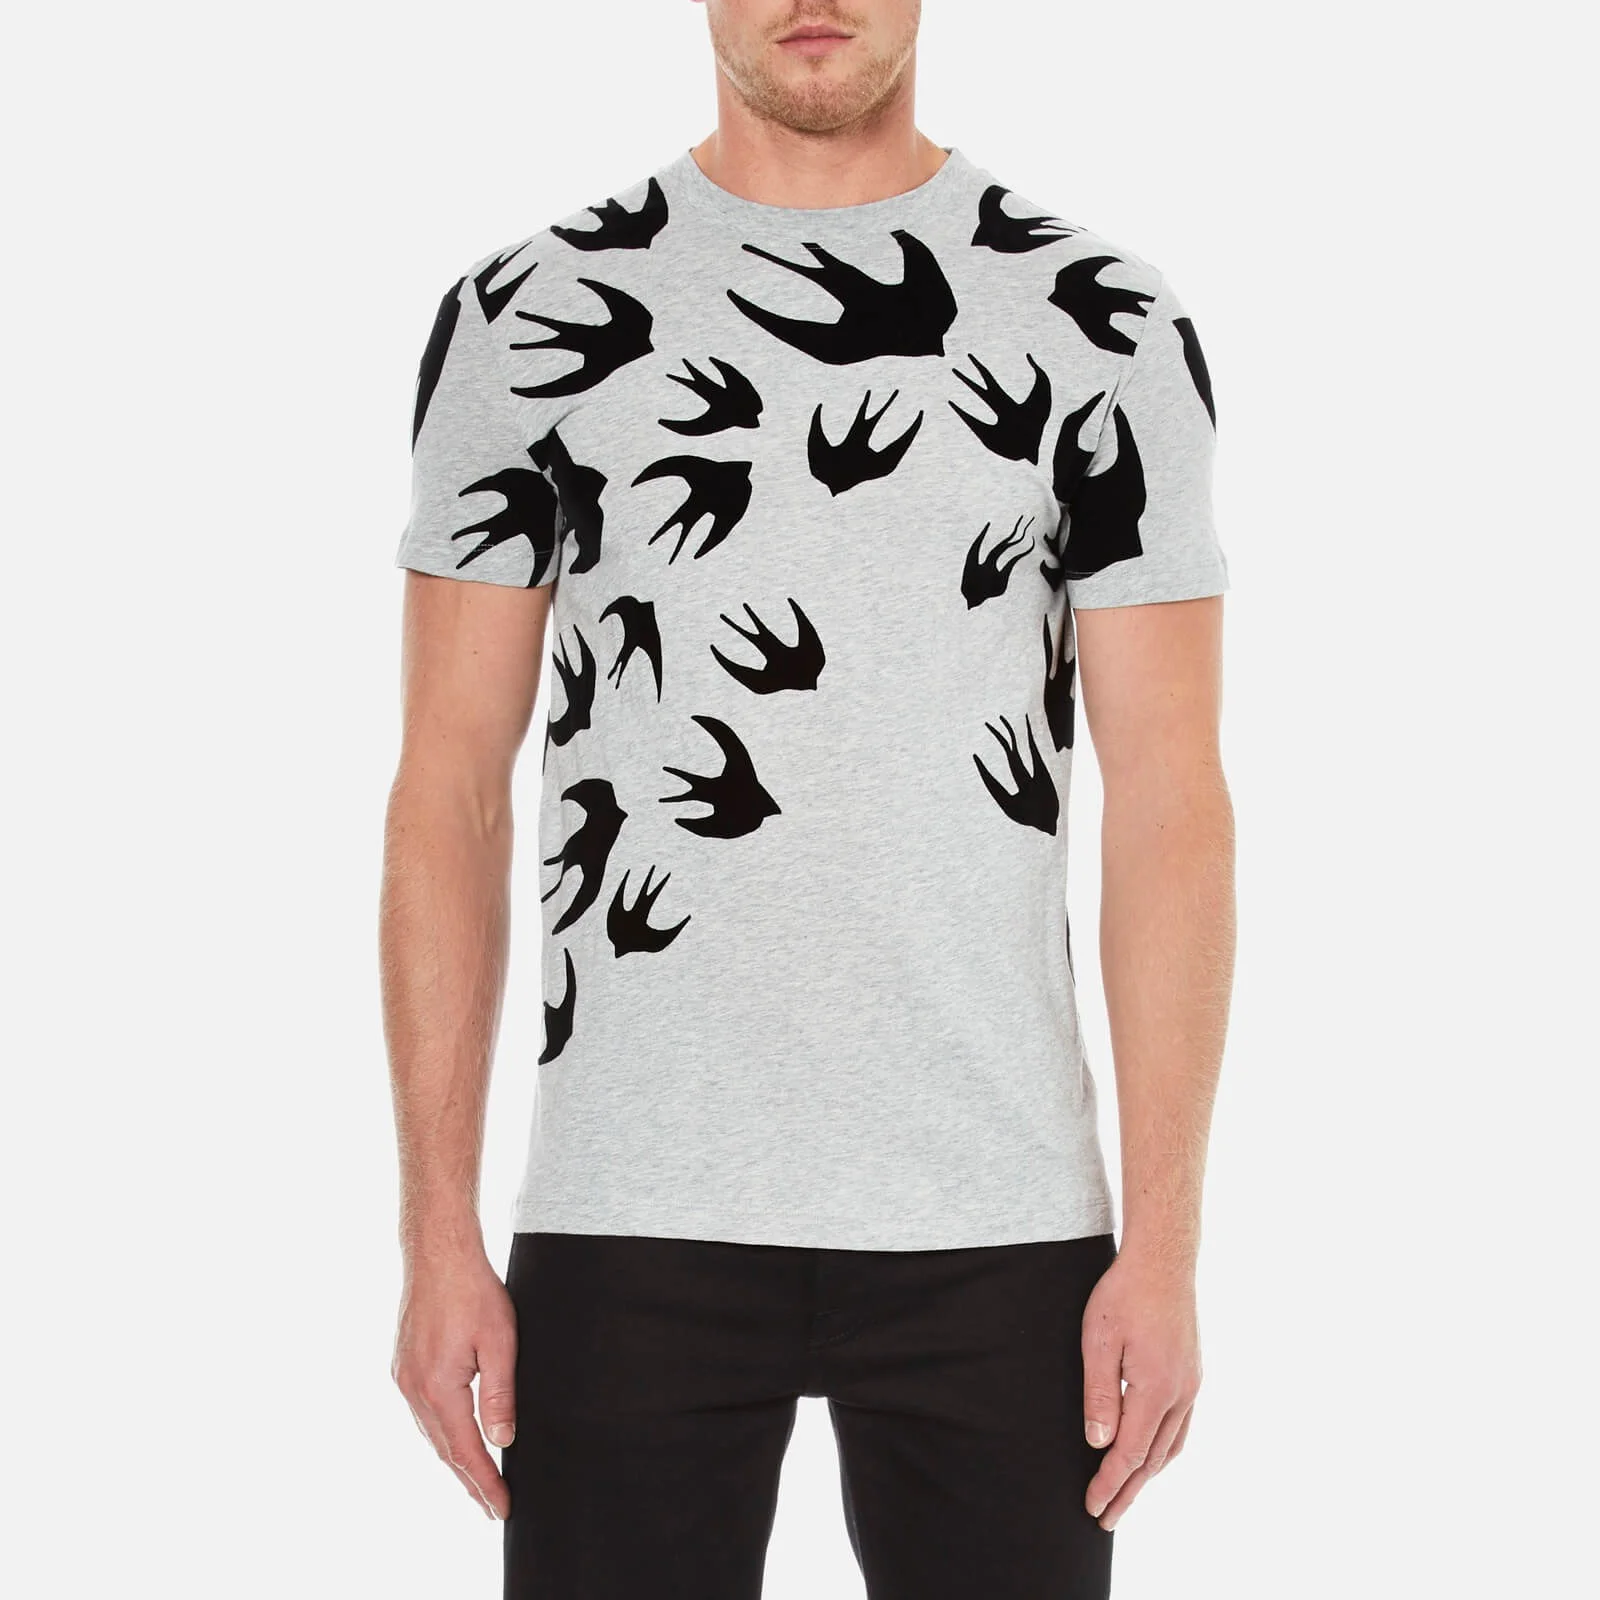 McQ Alexander McQueen Men's Swallow Swarm Flock T-Shirt - Mercury Melange Image 1